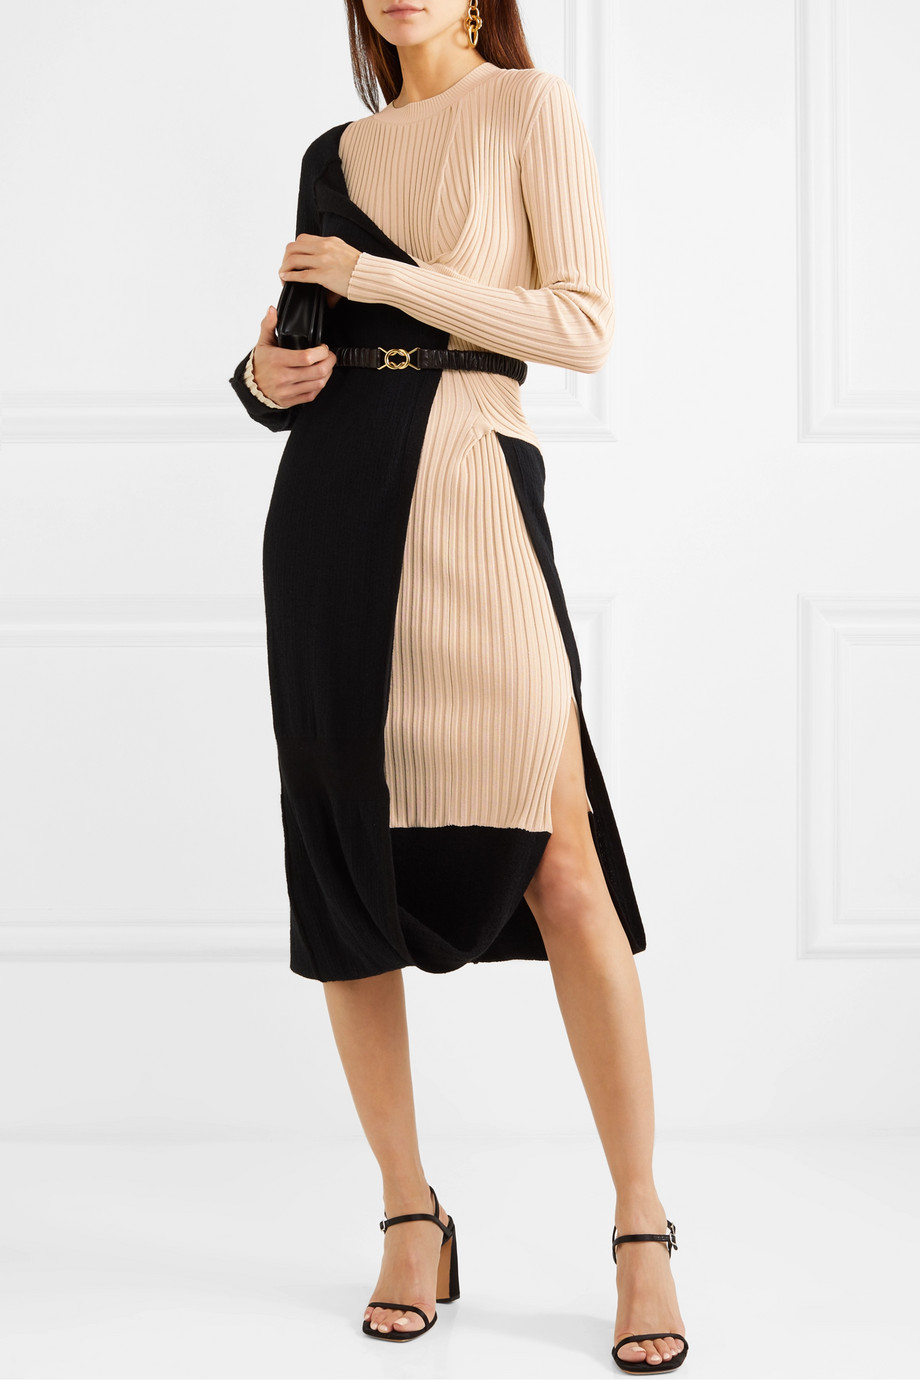 Bottega Veneta pulover haljina zima 2019. 1